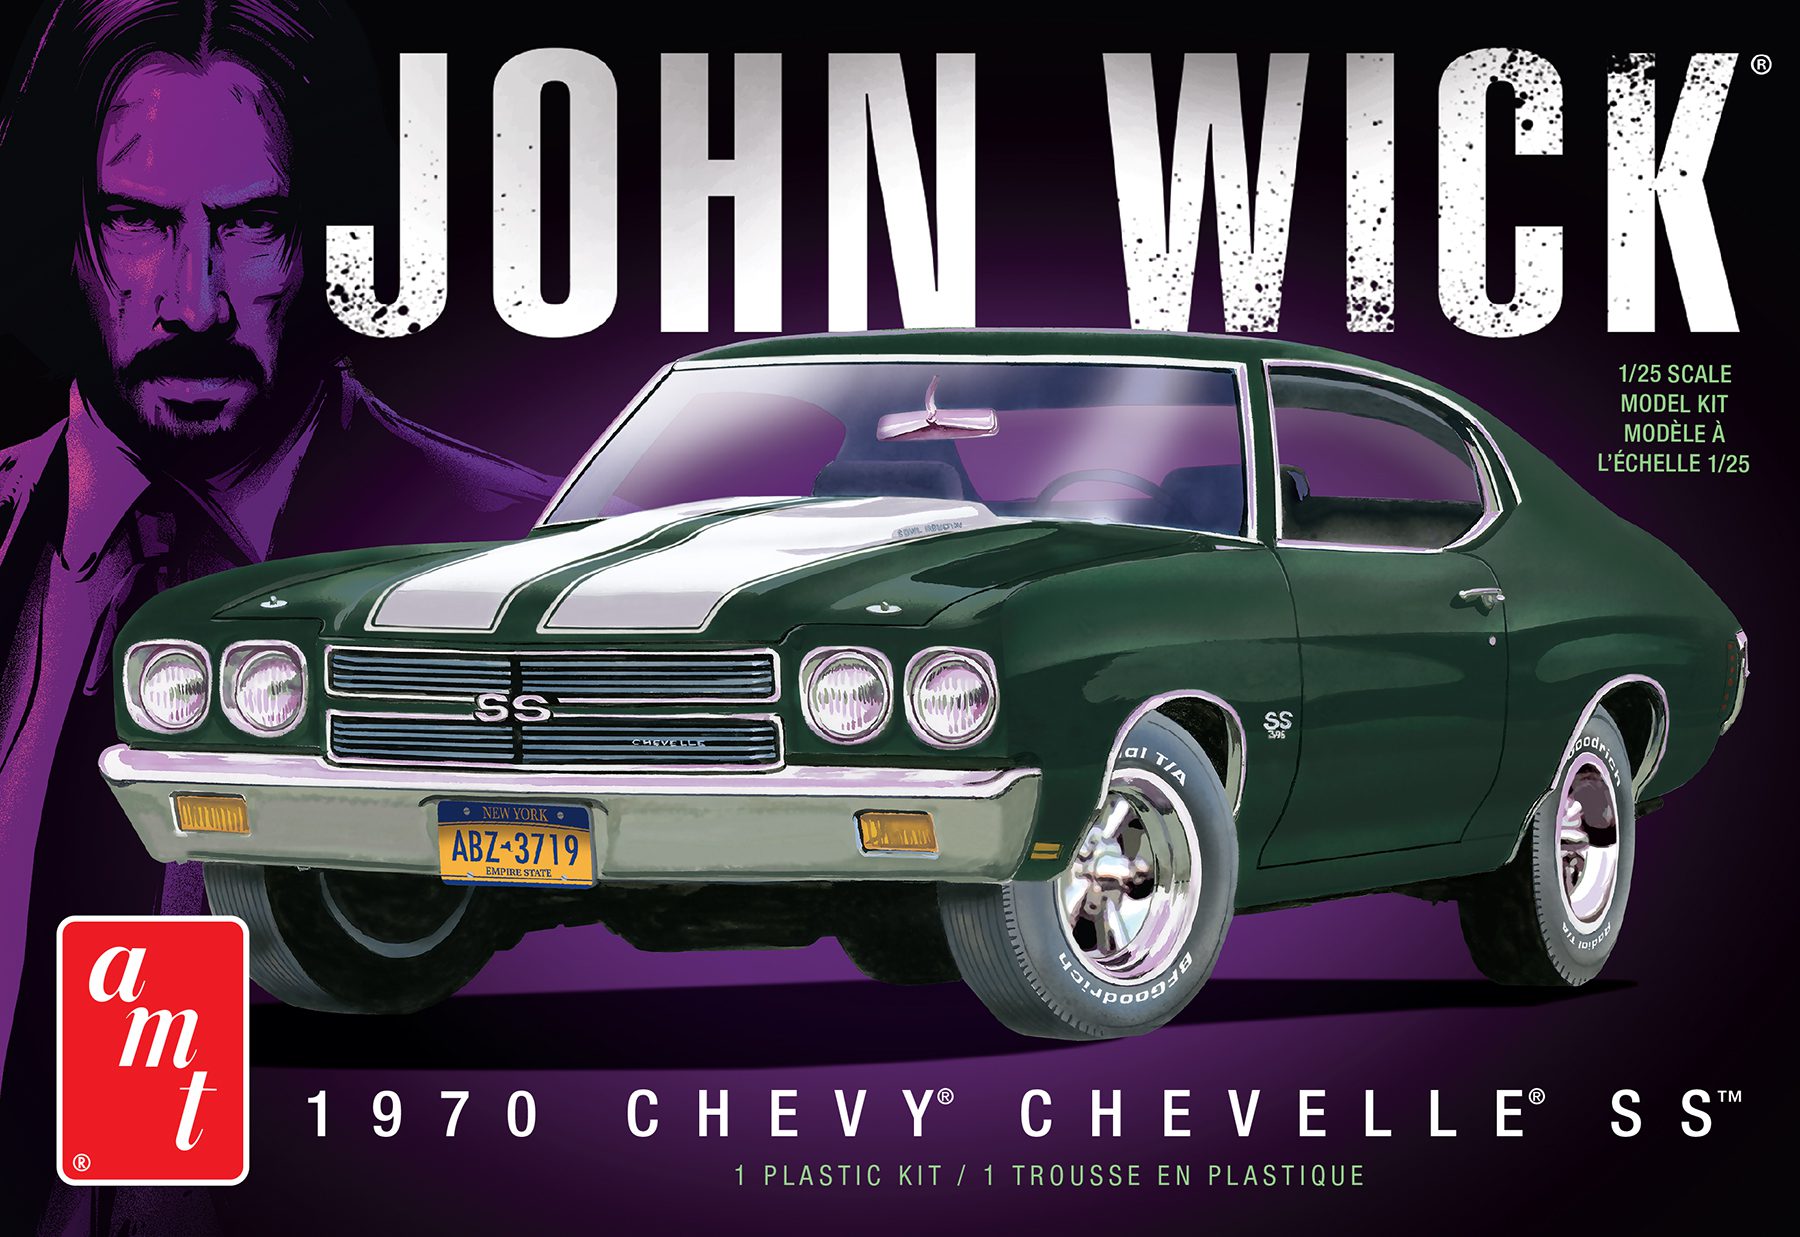 1:25 Chevrolet Chevelle 1970 "John Wick"